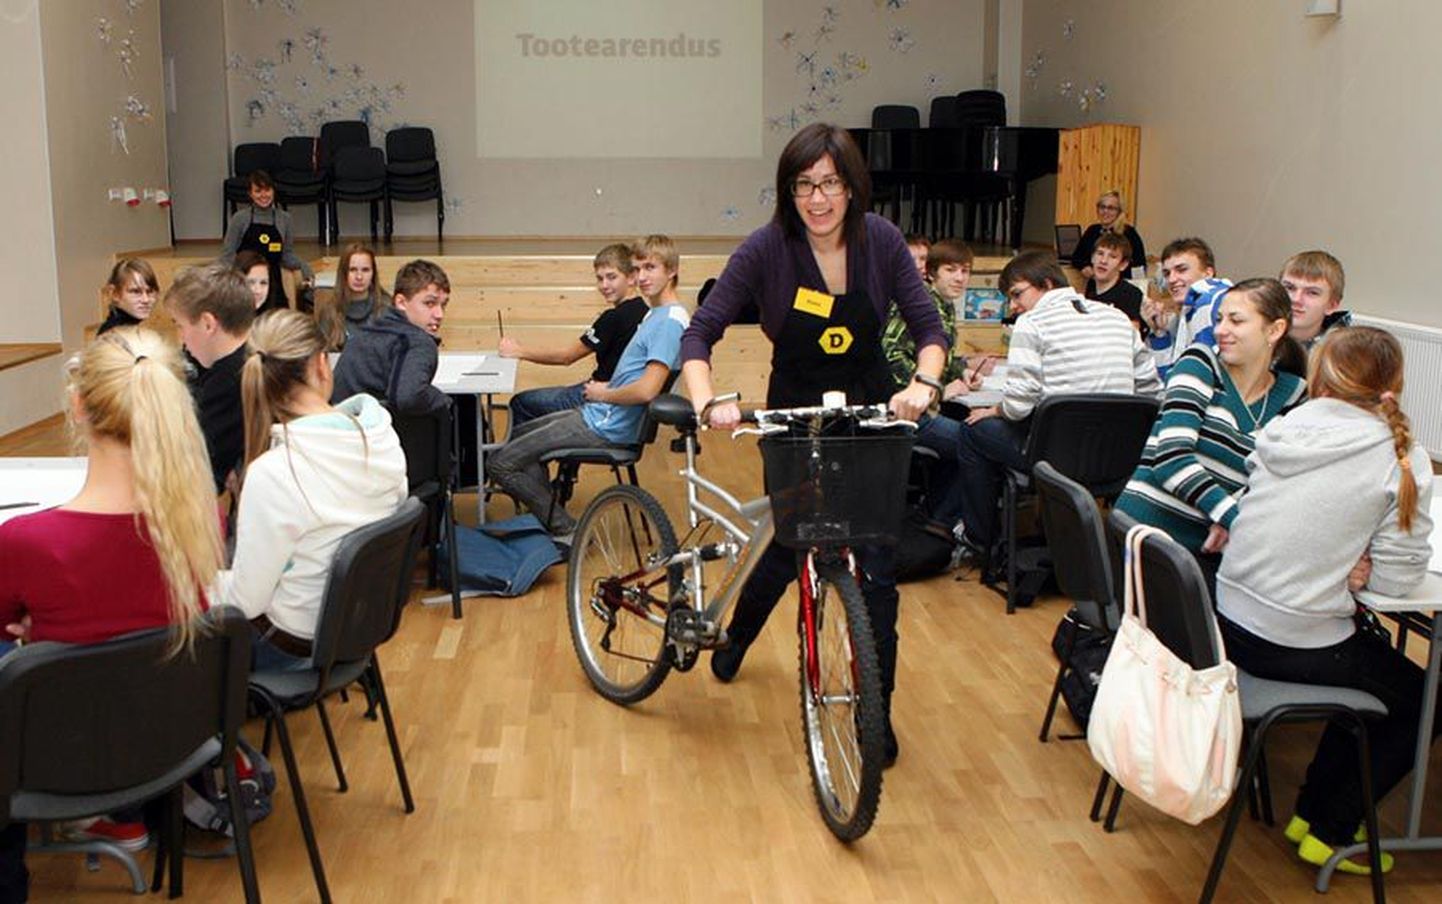 Kitzbergi gümnaasiumi õpilased veetsid eile mitu tundi jalgrattatarvikuid välja mõeldes ning esitlesid neid siis kaaslastele.